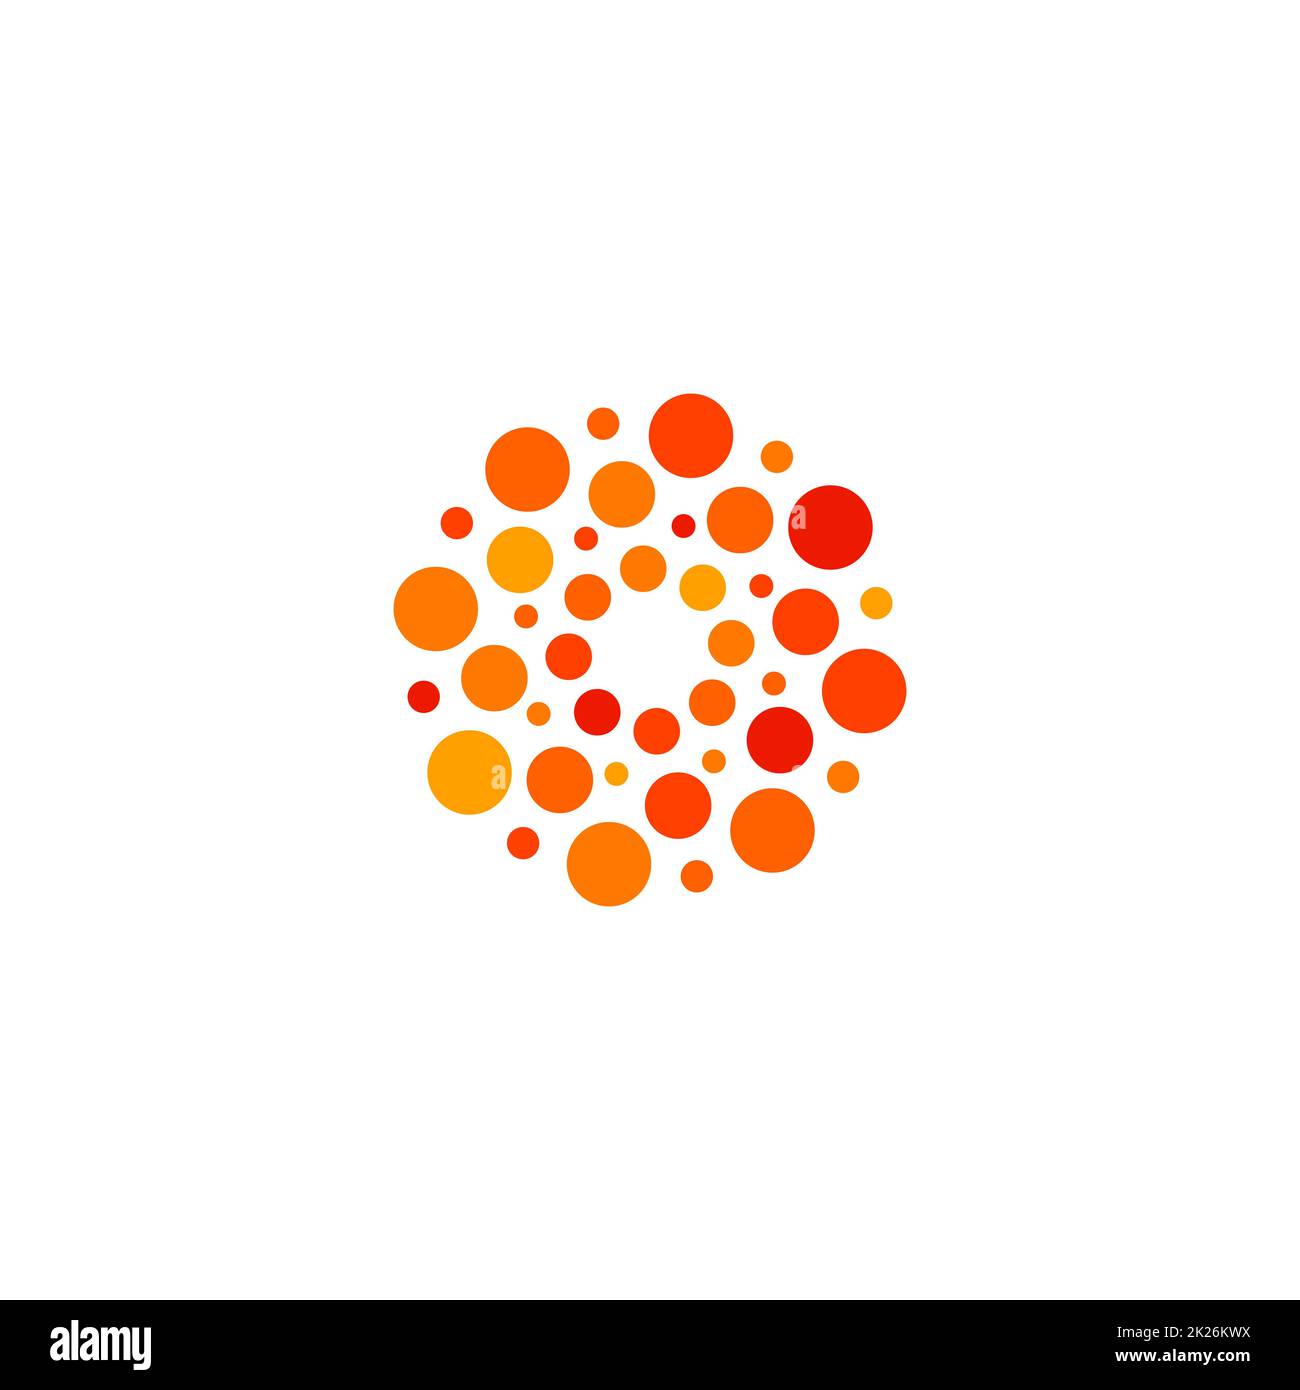 Isoliertes, abstraktes, rundes, orangefarbenes und rotes Logo, gepunktetes, stilisiertes Sonnenlogo auf weißem Hintergrund, Vektordarstellung Stockfoto